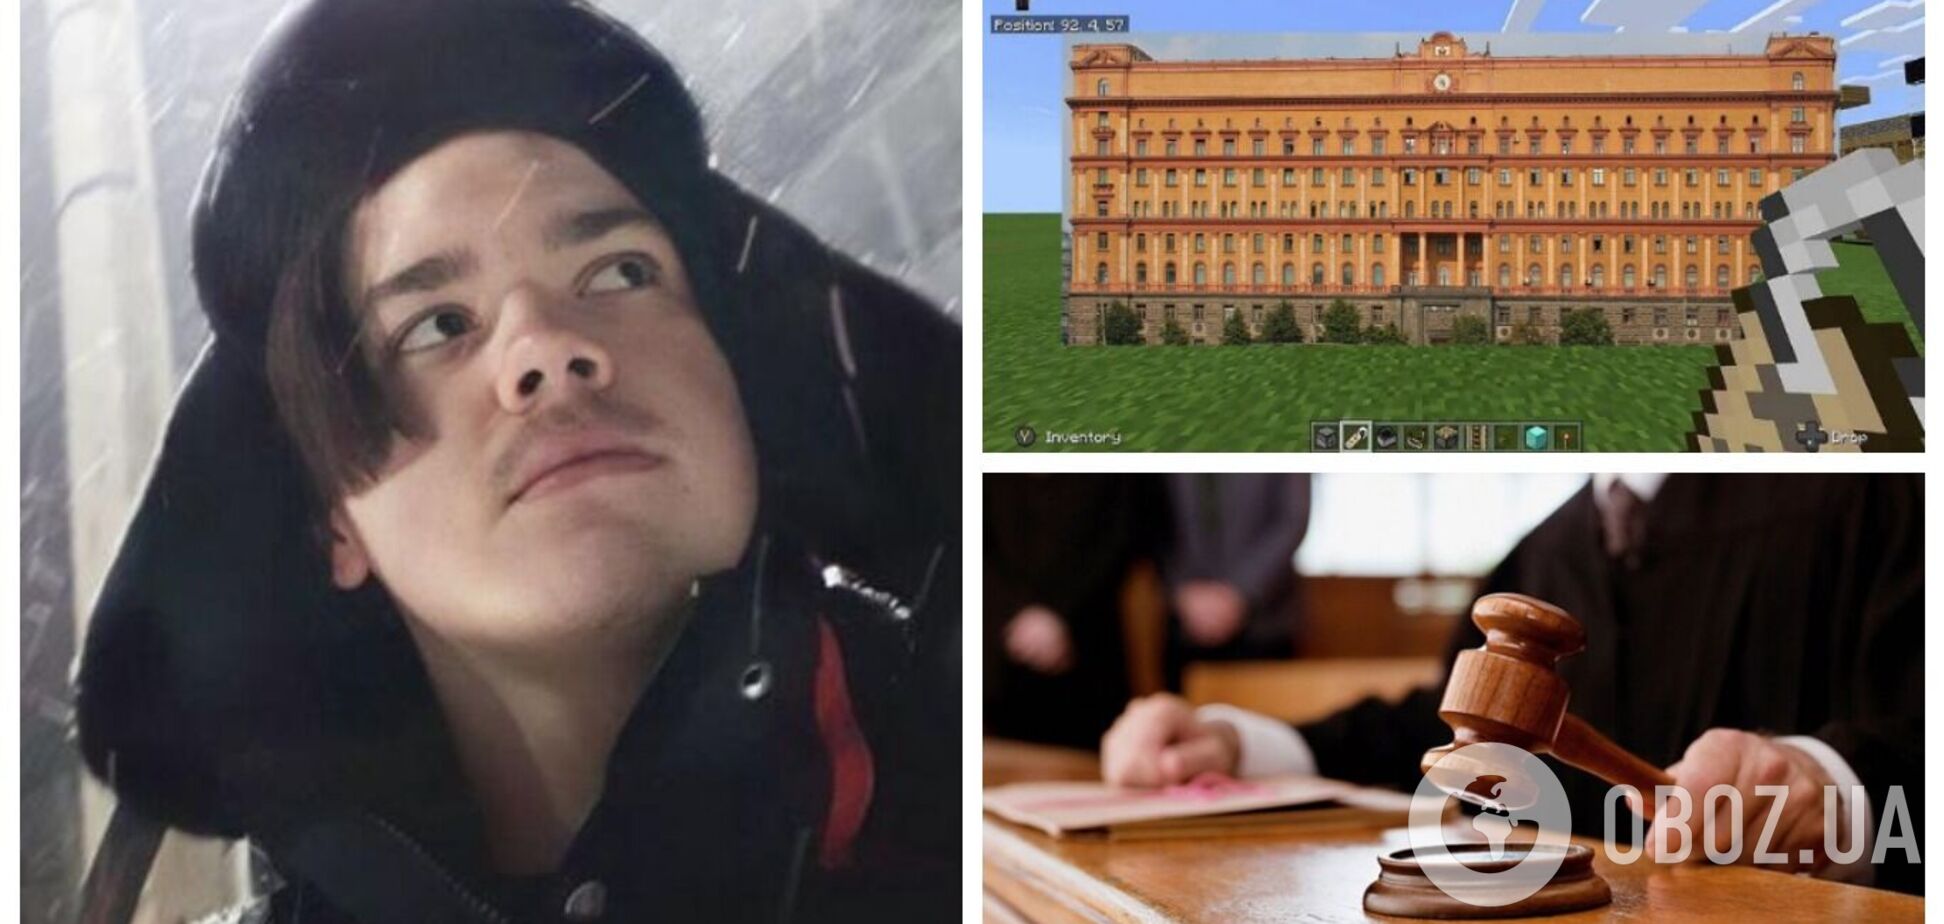 В России отправили в колонию подростка, который хотел взорвать здание ФСБ в компьютерной игре Minecraft